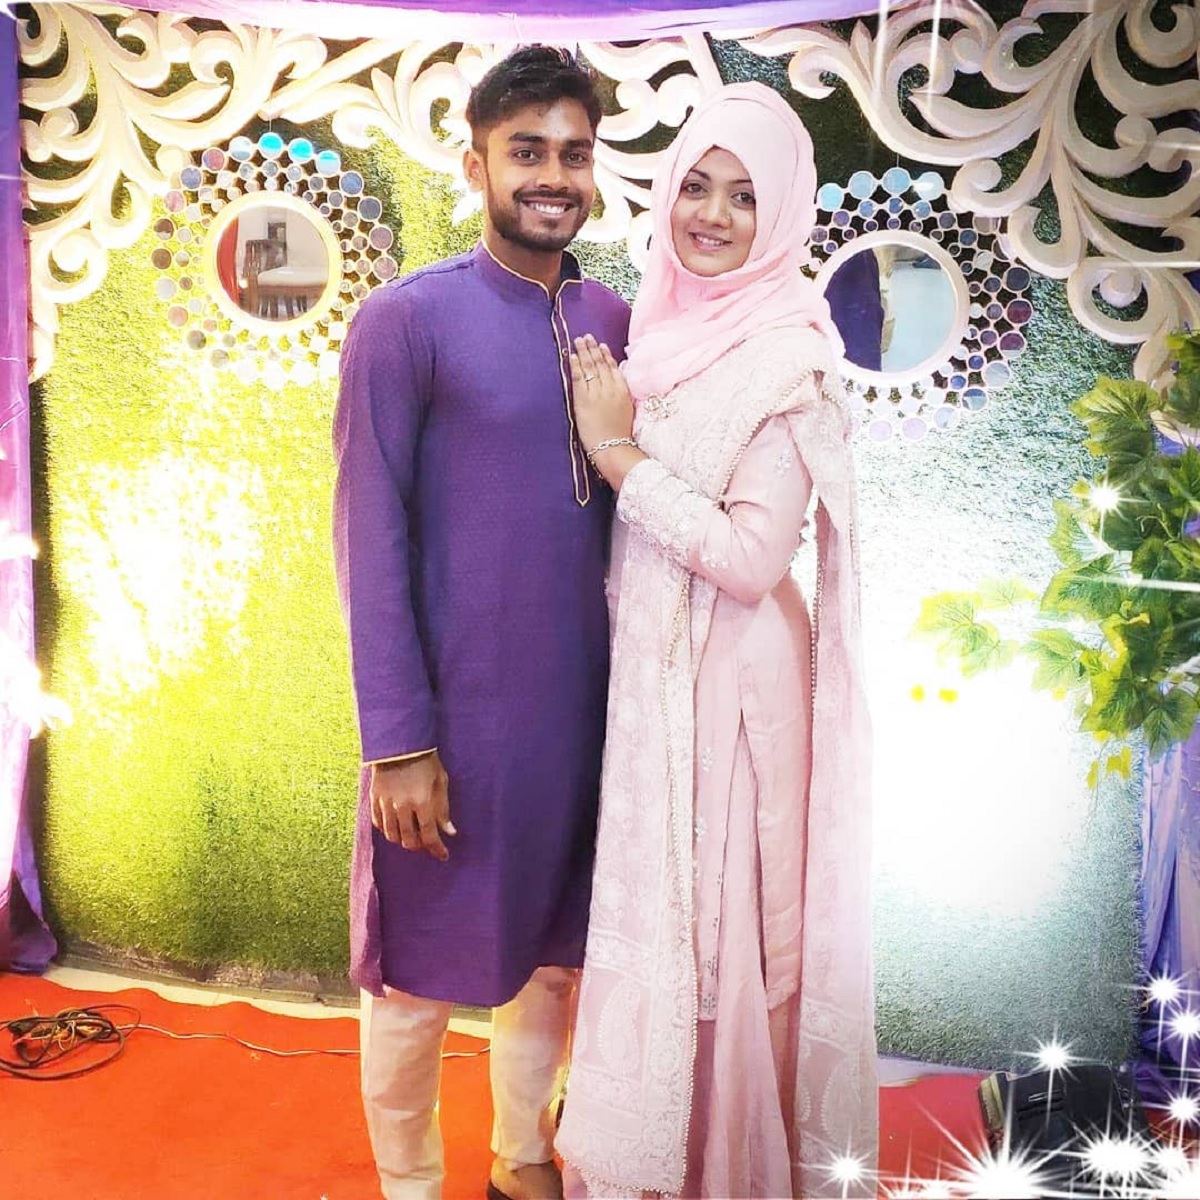  बांग्लादेश के ऑलराउंडर मेहदी हसन मिराज ने राबेया अख्तर प्रीति से शादी की. इस कपल ने 6 साल तक एक-दूसरे को डेट किया. कपल 2019 में शादी के बंधन में बंधा था. इस शादी की रस्म खुलना में दुल्हन के घर खलीशपुर में आयोजित की गई थीं. मिराज की पत्नी शादी के वक्त खुलना के बीएल कॉलेज में हायर सेकेंडरी स्कूल (एचएससी) की छात्रा थीं. उनके ससुर बेलाल हुसैन एक व्यापारी हैं. (Mehidy Hasan Miraz/Instagram)